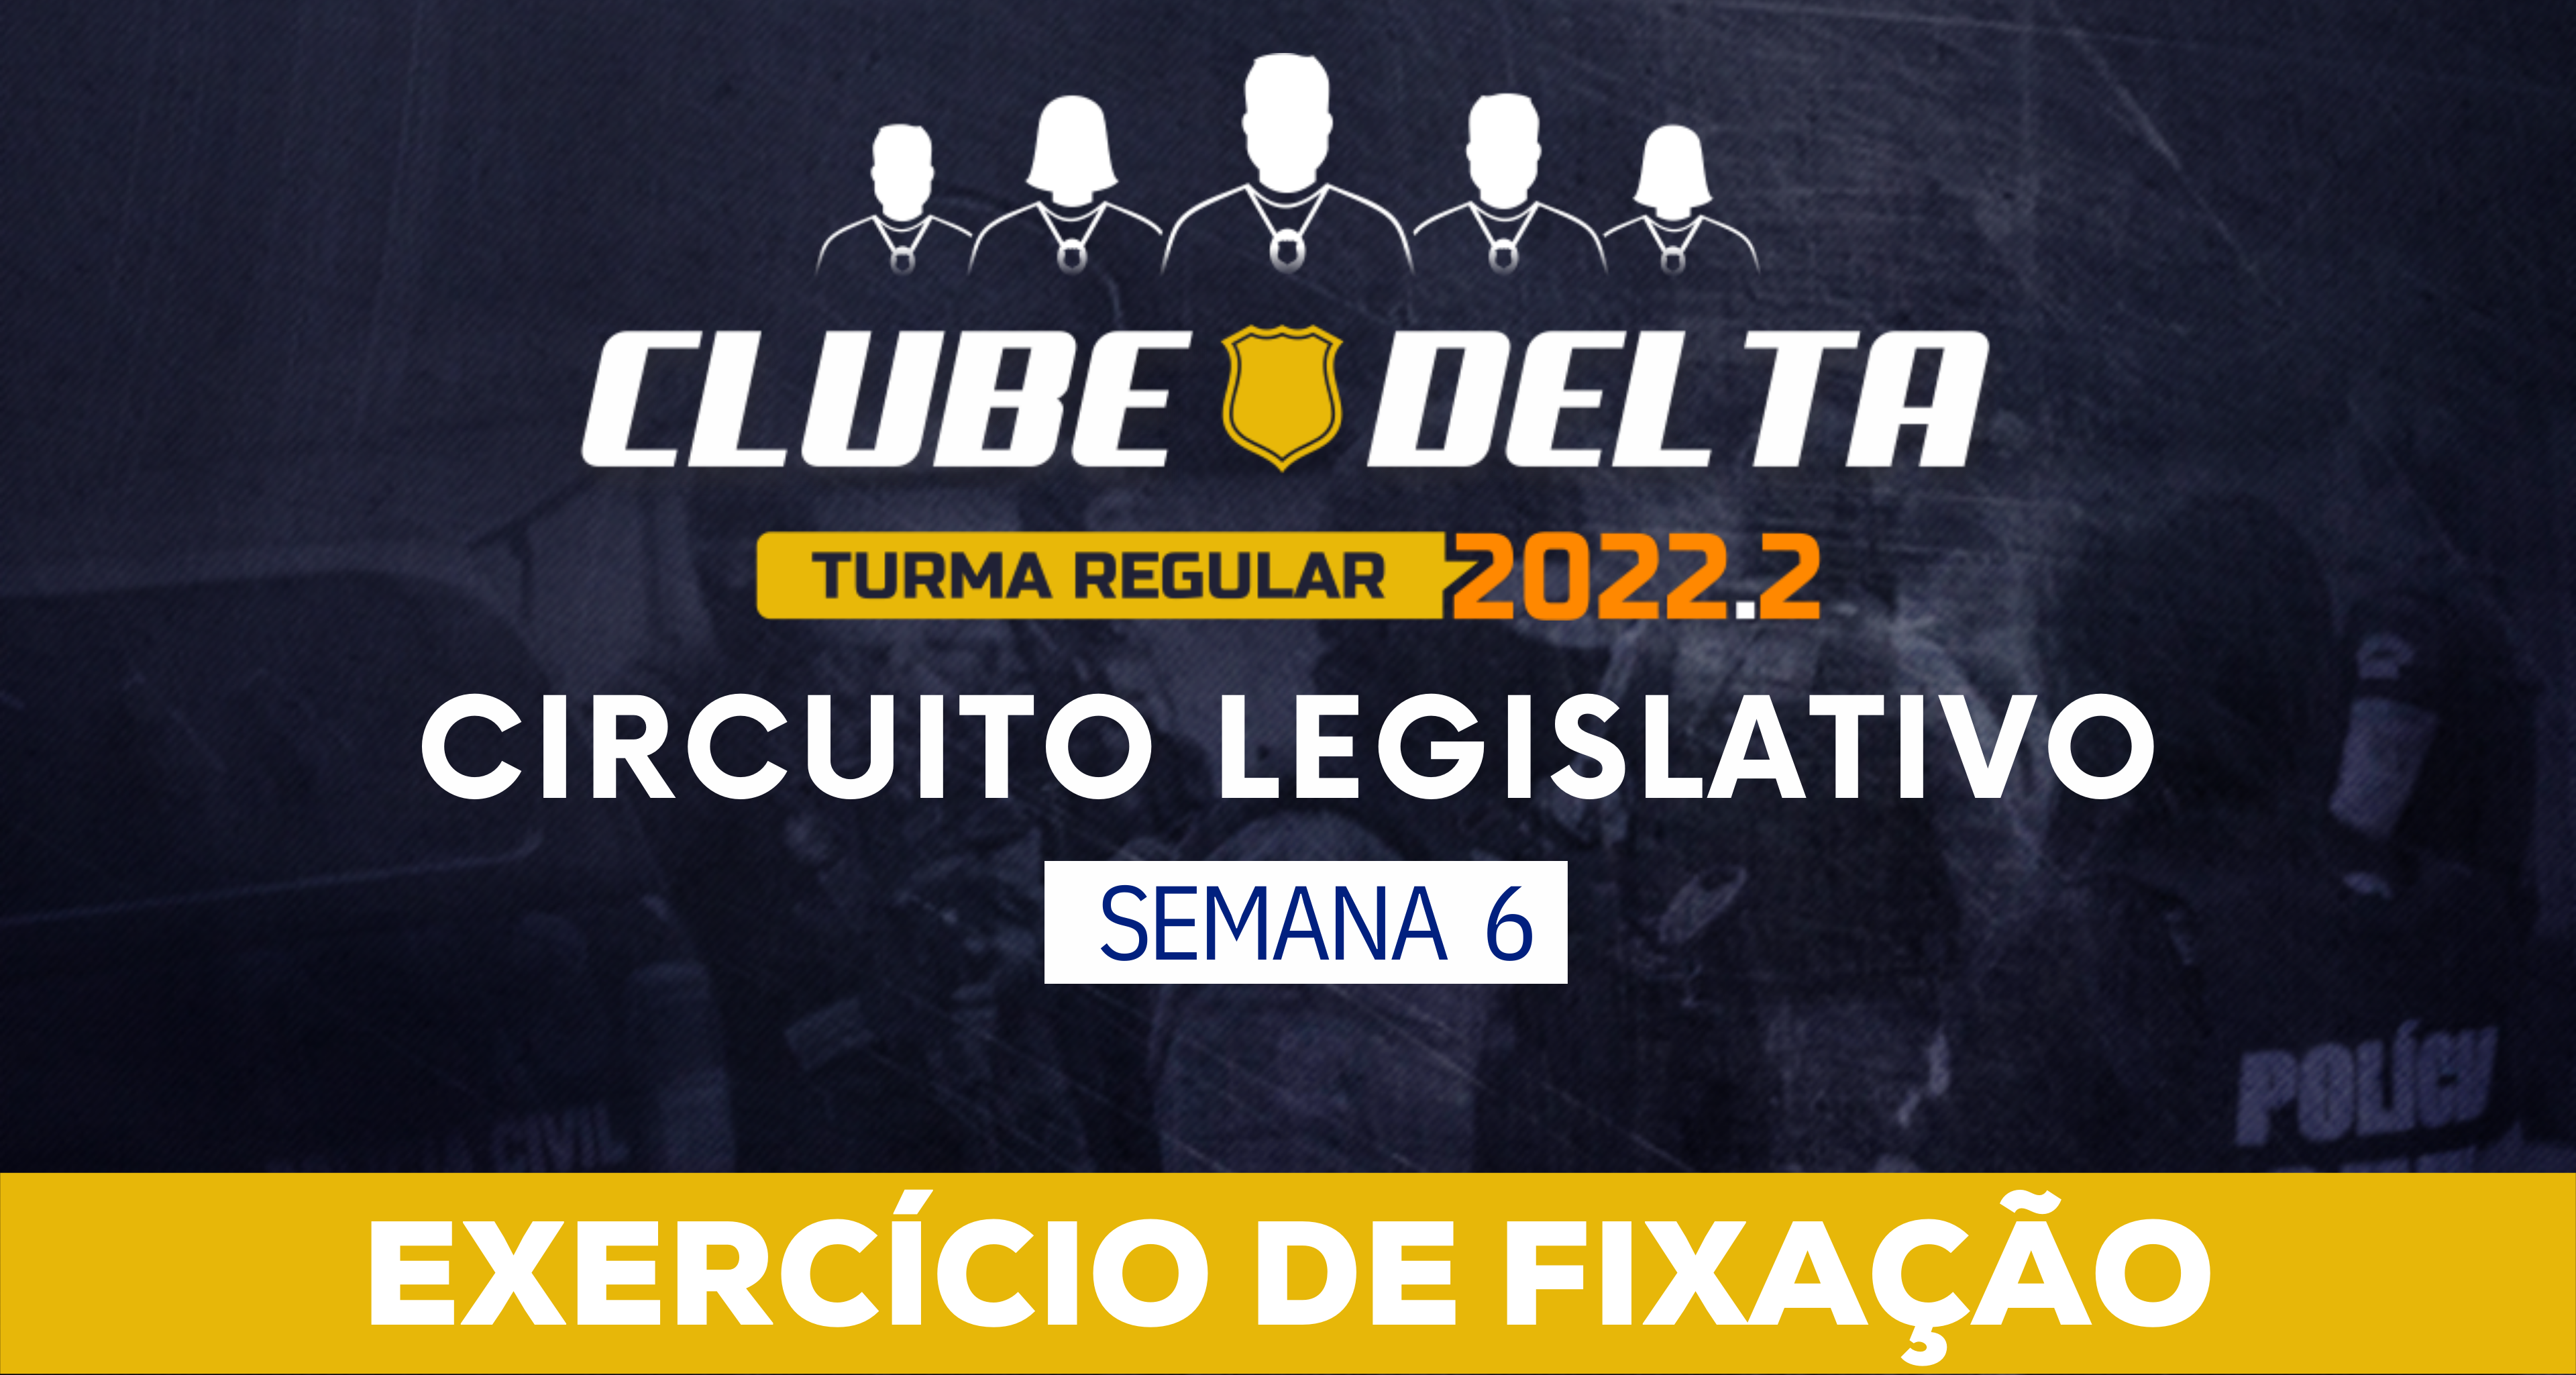 Circuito Legislativo 2022.2 (Clube Delta - Semana 6)